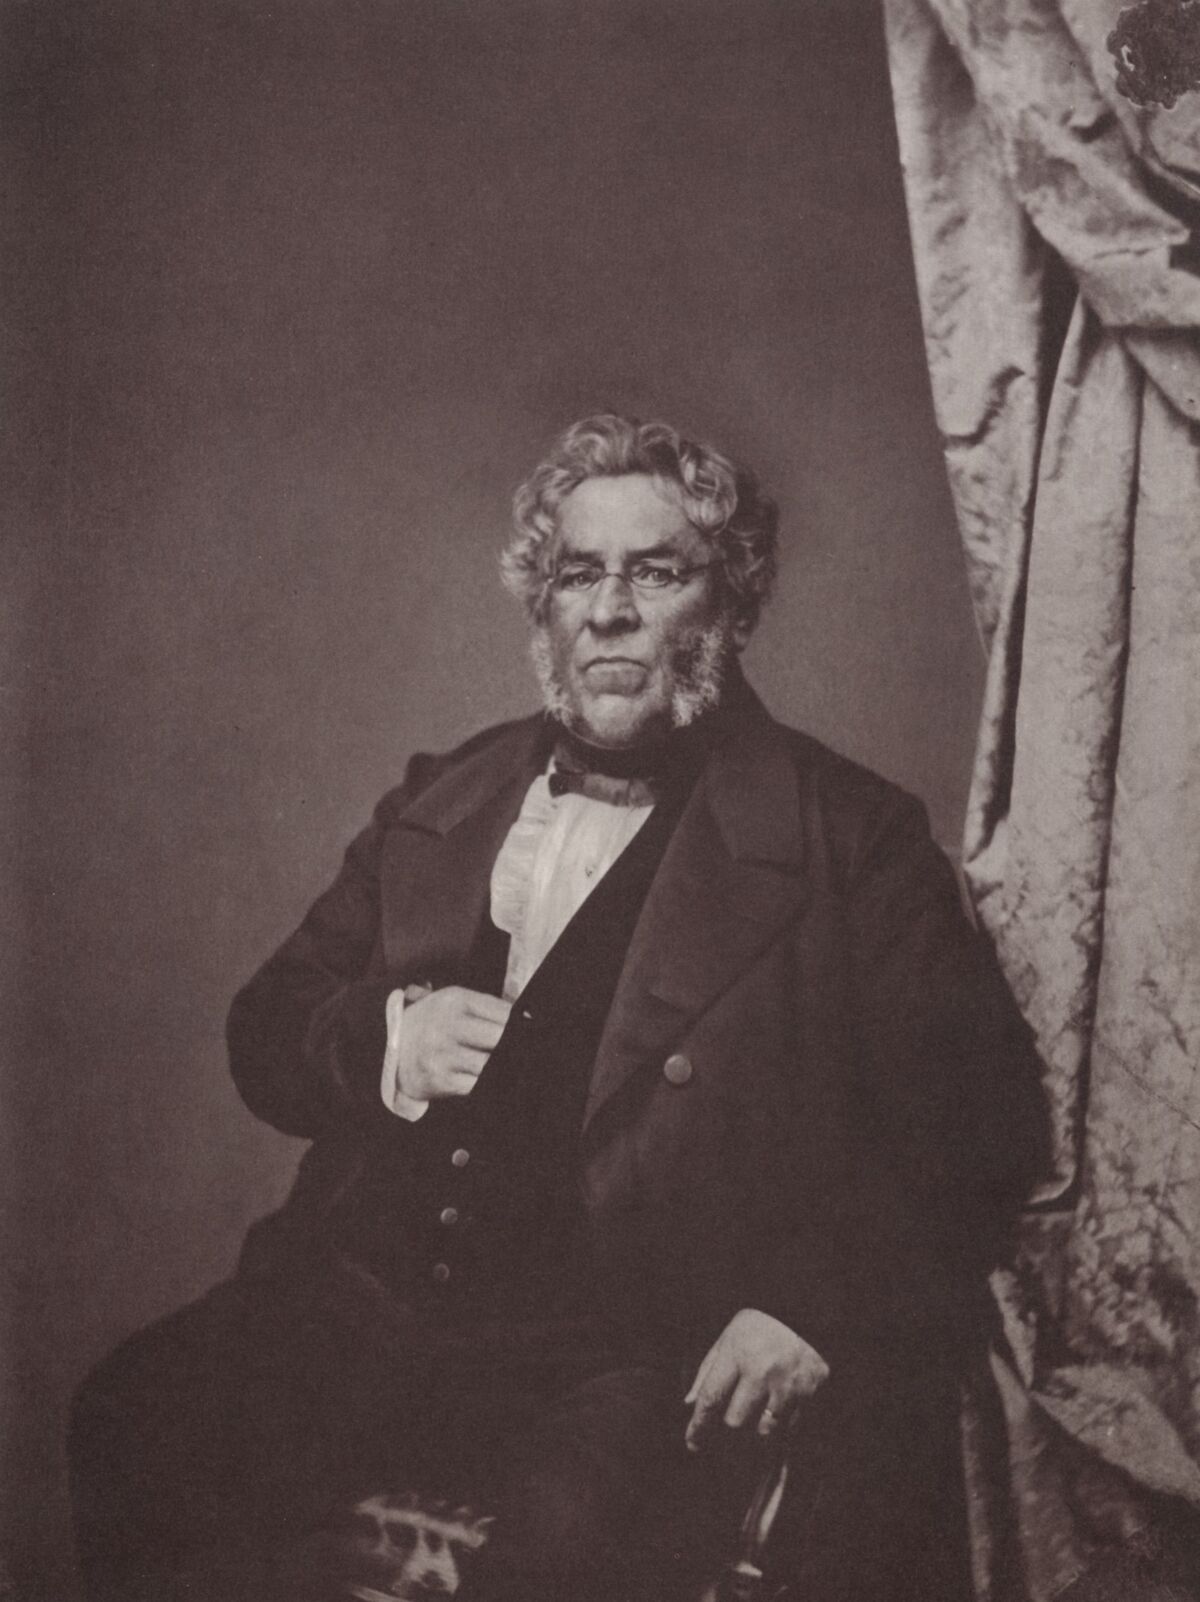 GFD 1/193: Joseph Anton von Maffei (Fotografie von Franz Hanfstaengl, um 1860)